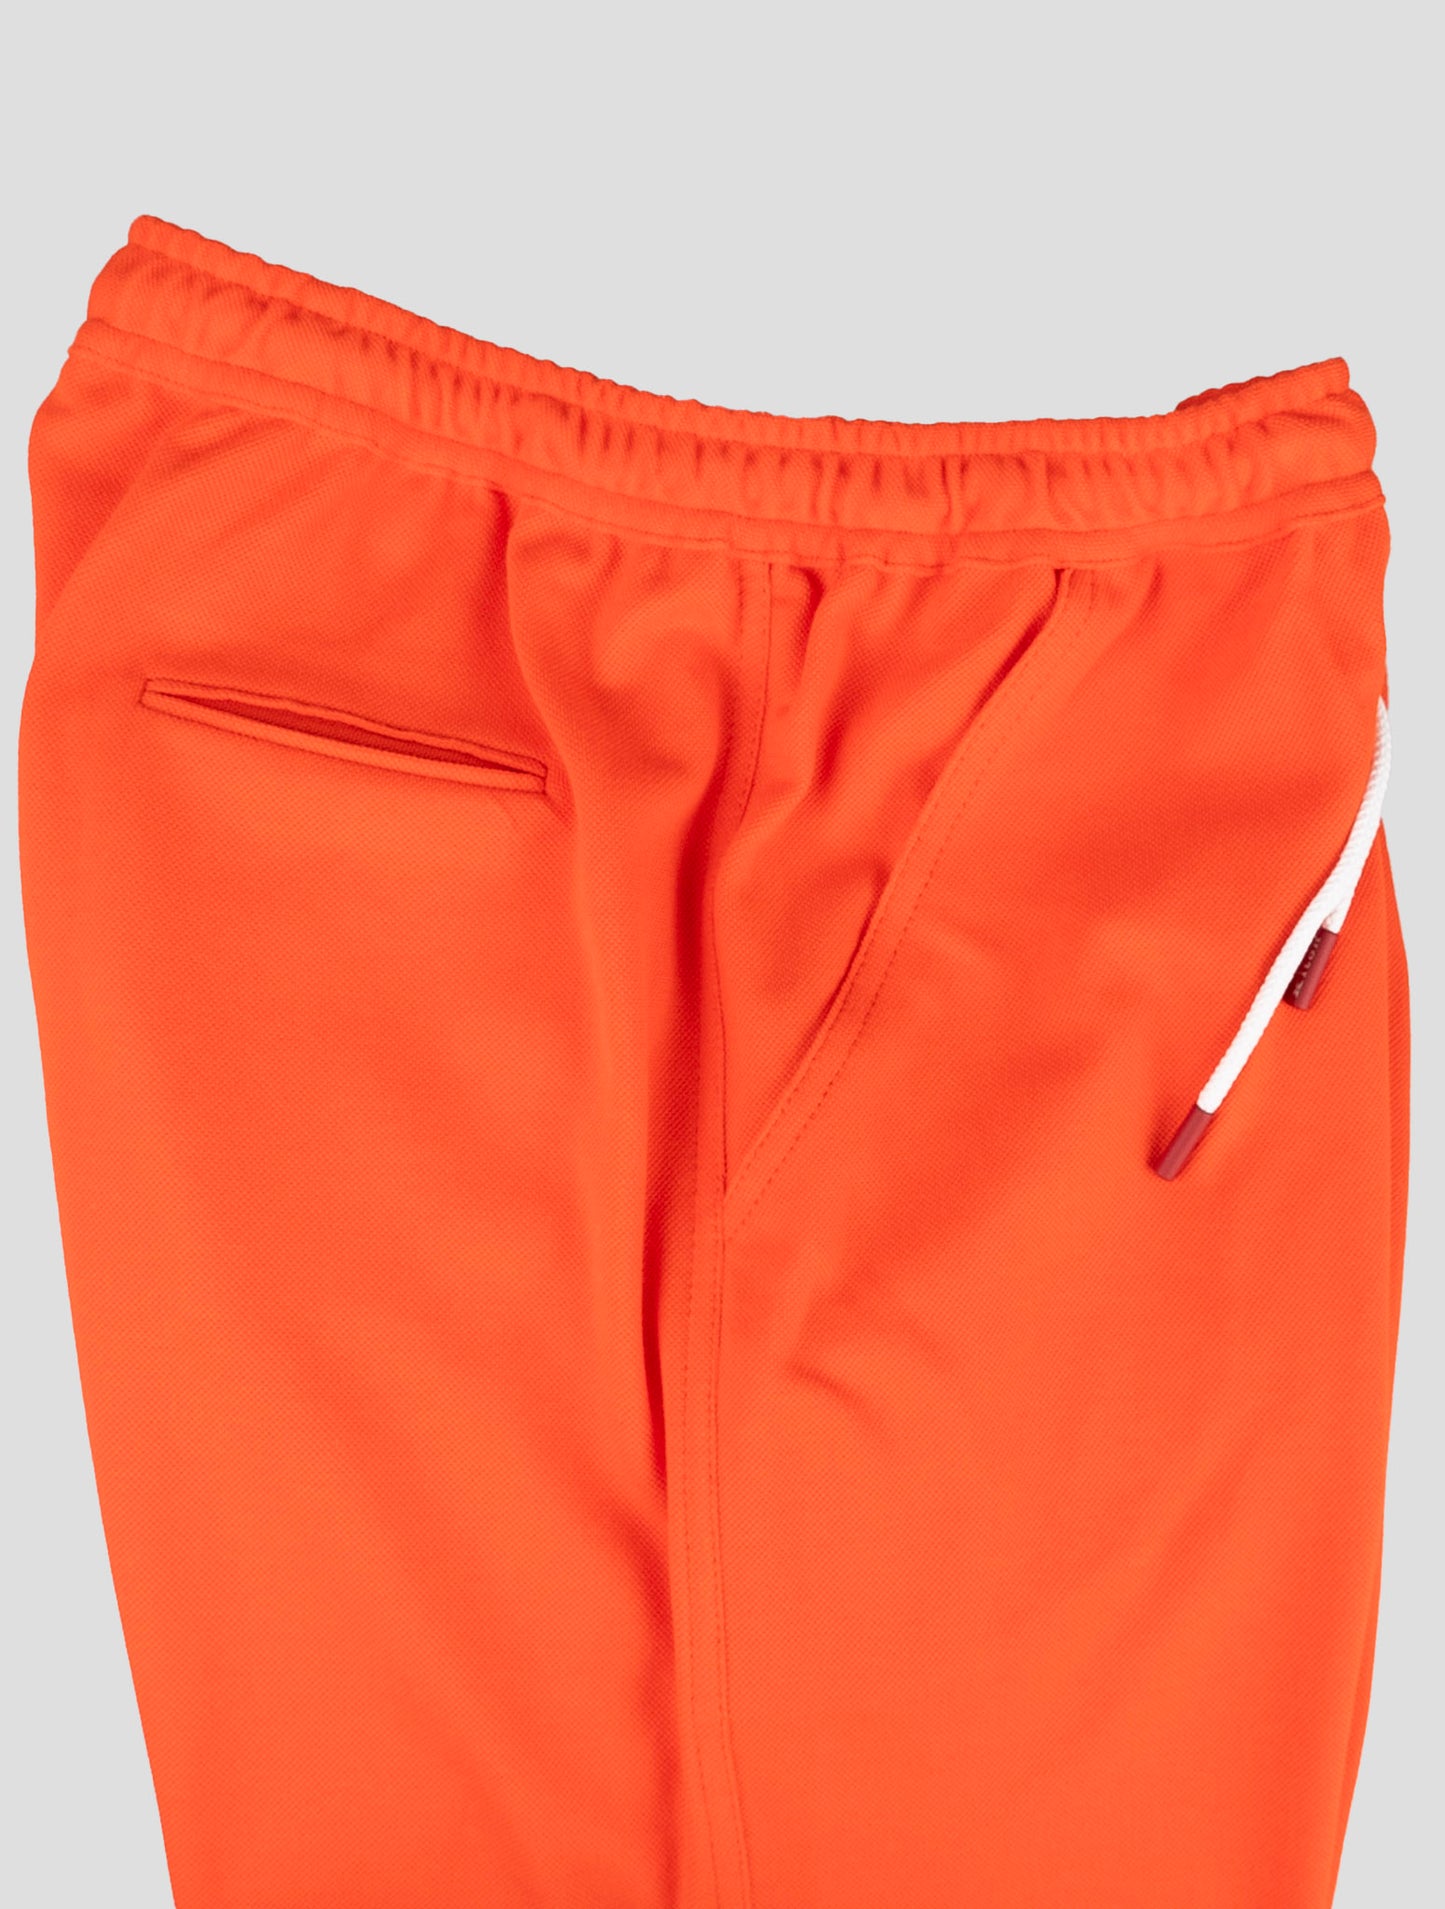 Kiton Matching Outfit - Hvid Umbi og Orange Short Pants Træningsdragt